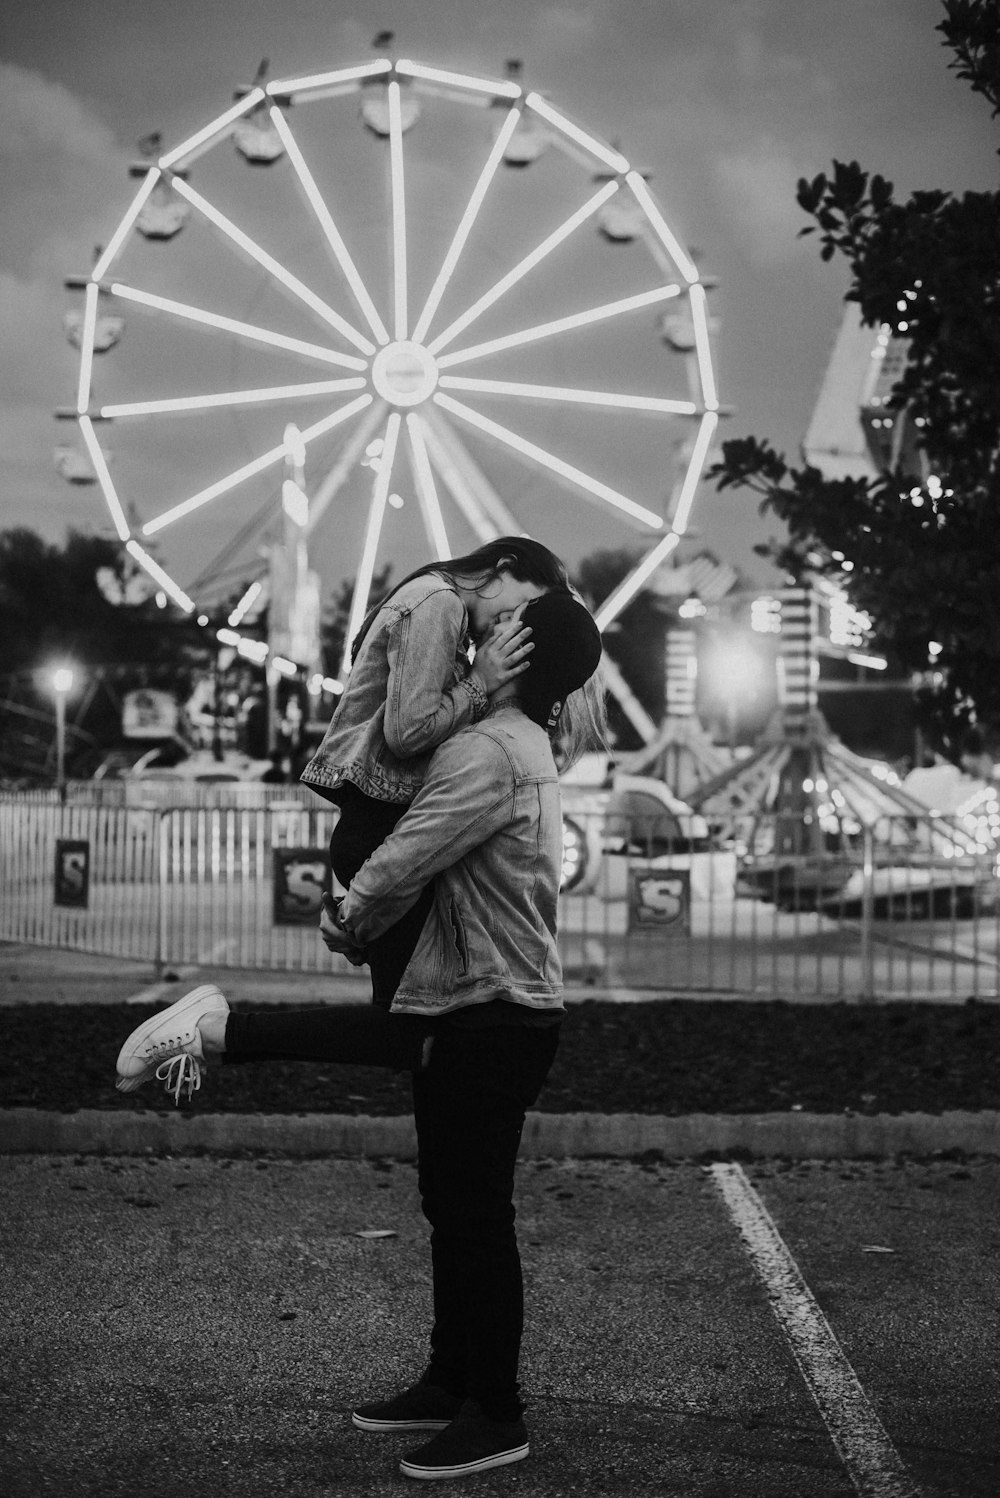 fotografia em tons de cinza do casal beijando em um parque de diversões